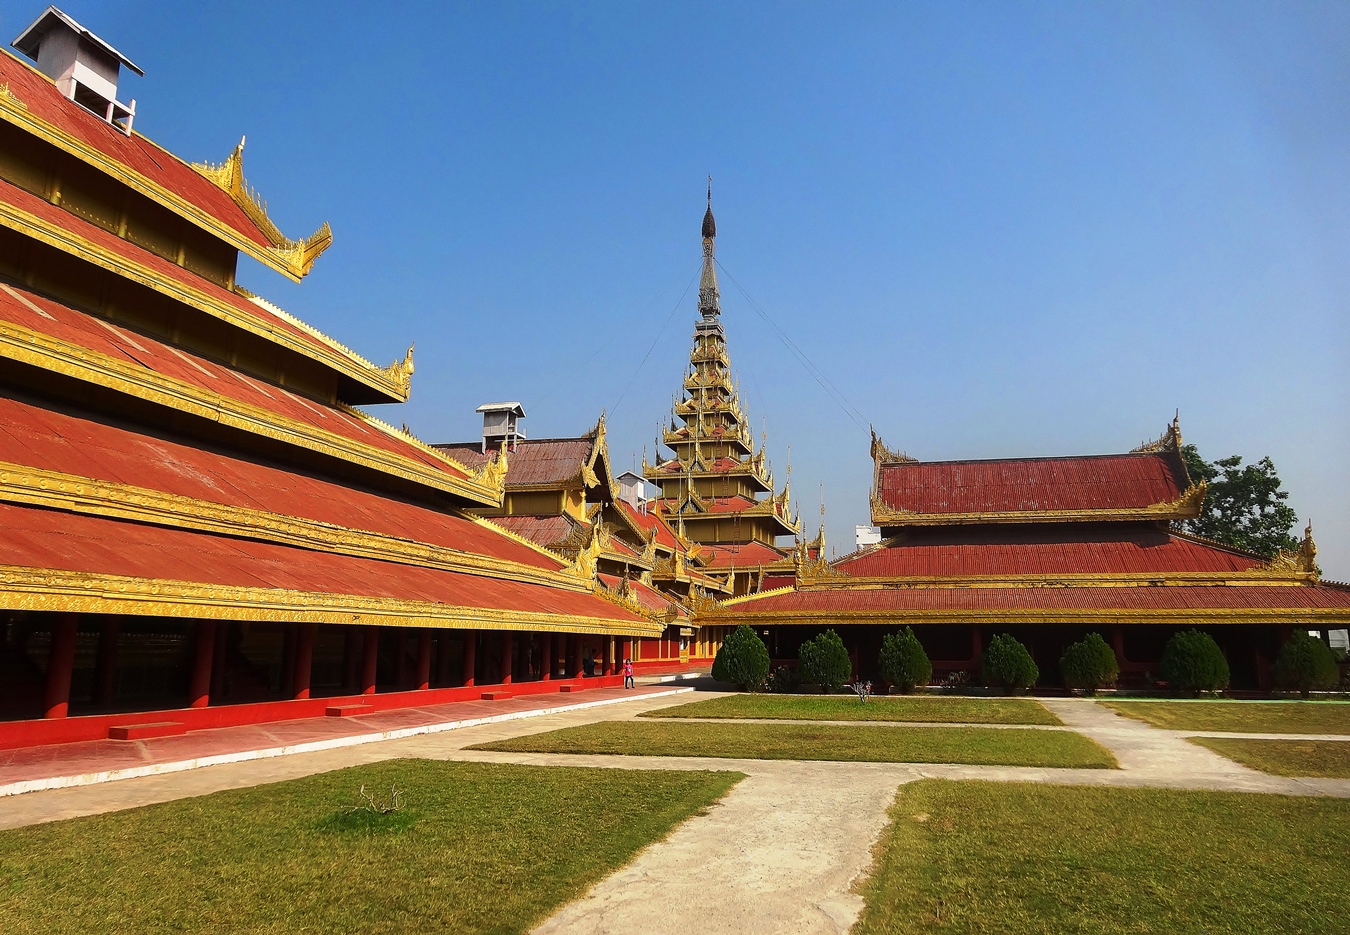 Mandalay Palace burma